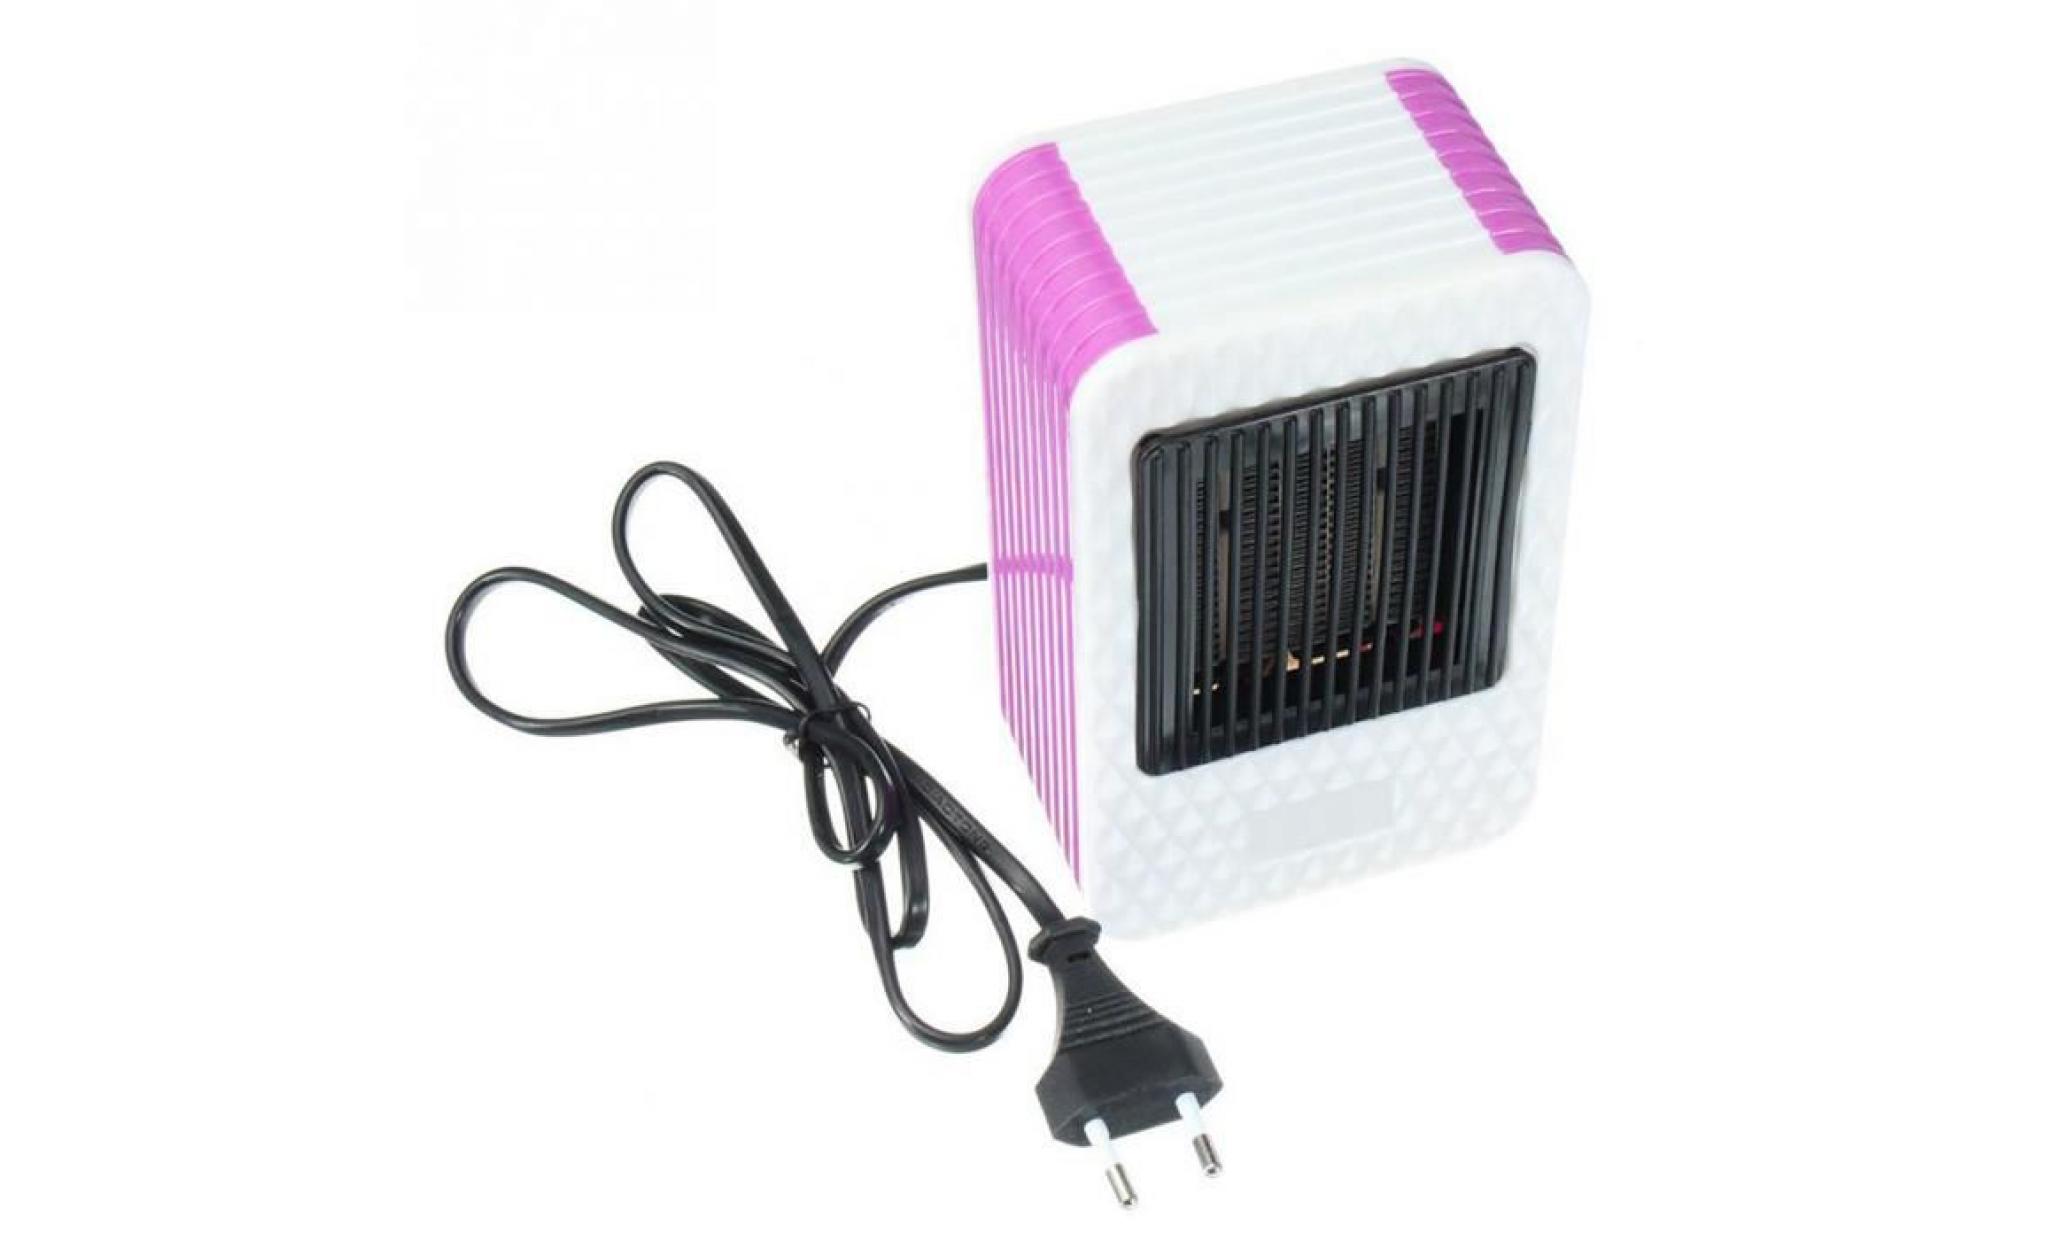 neufu 500w mini portable electric électriques chauffage à air chaud réchauffeur eu plug pour bureau domestique pas cher